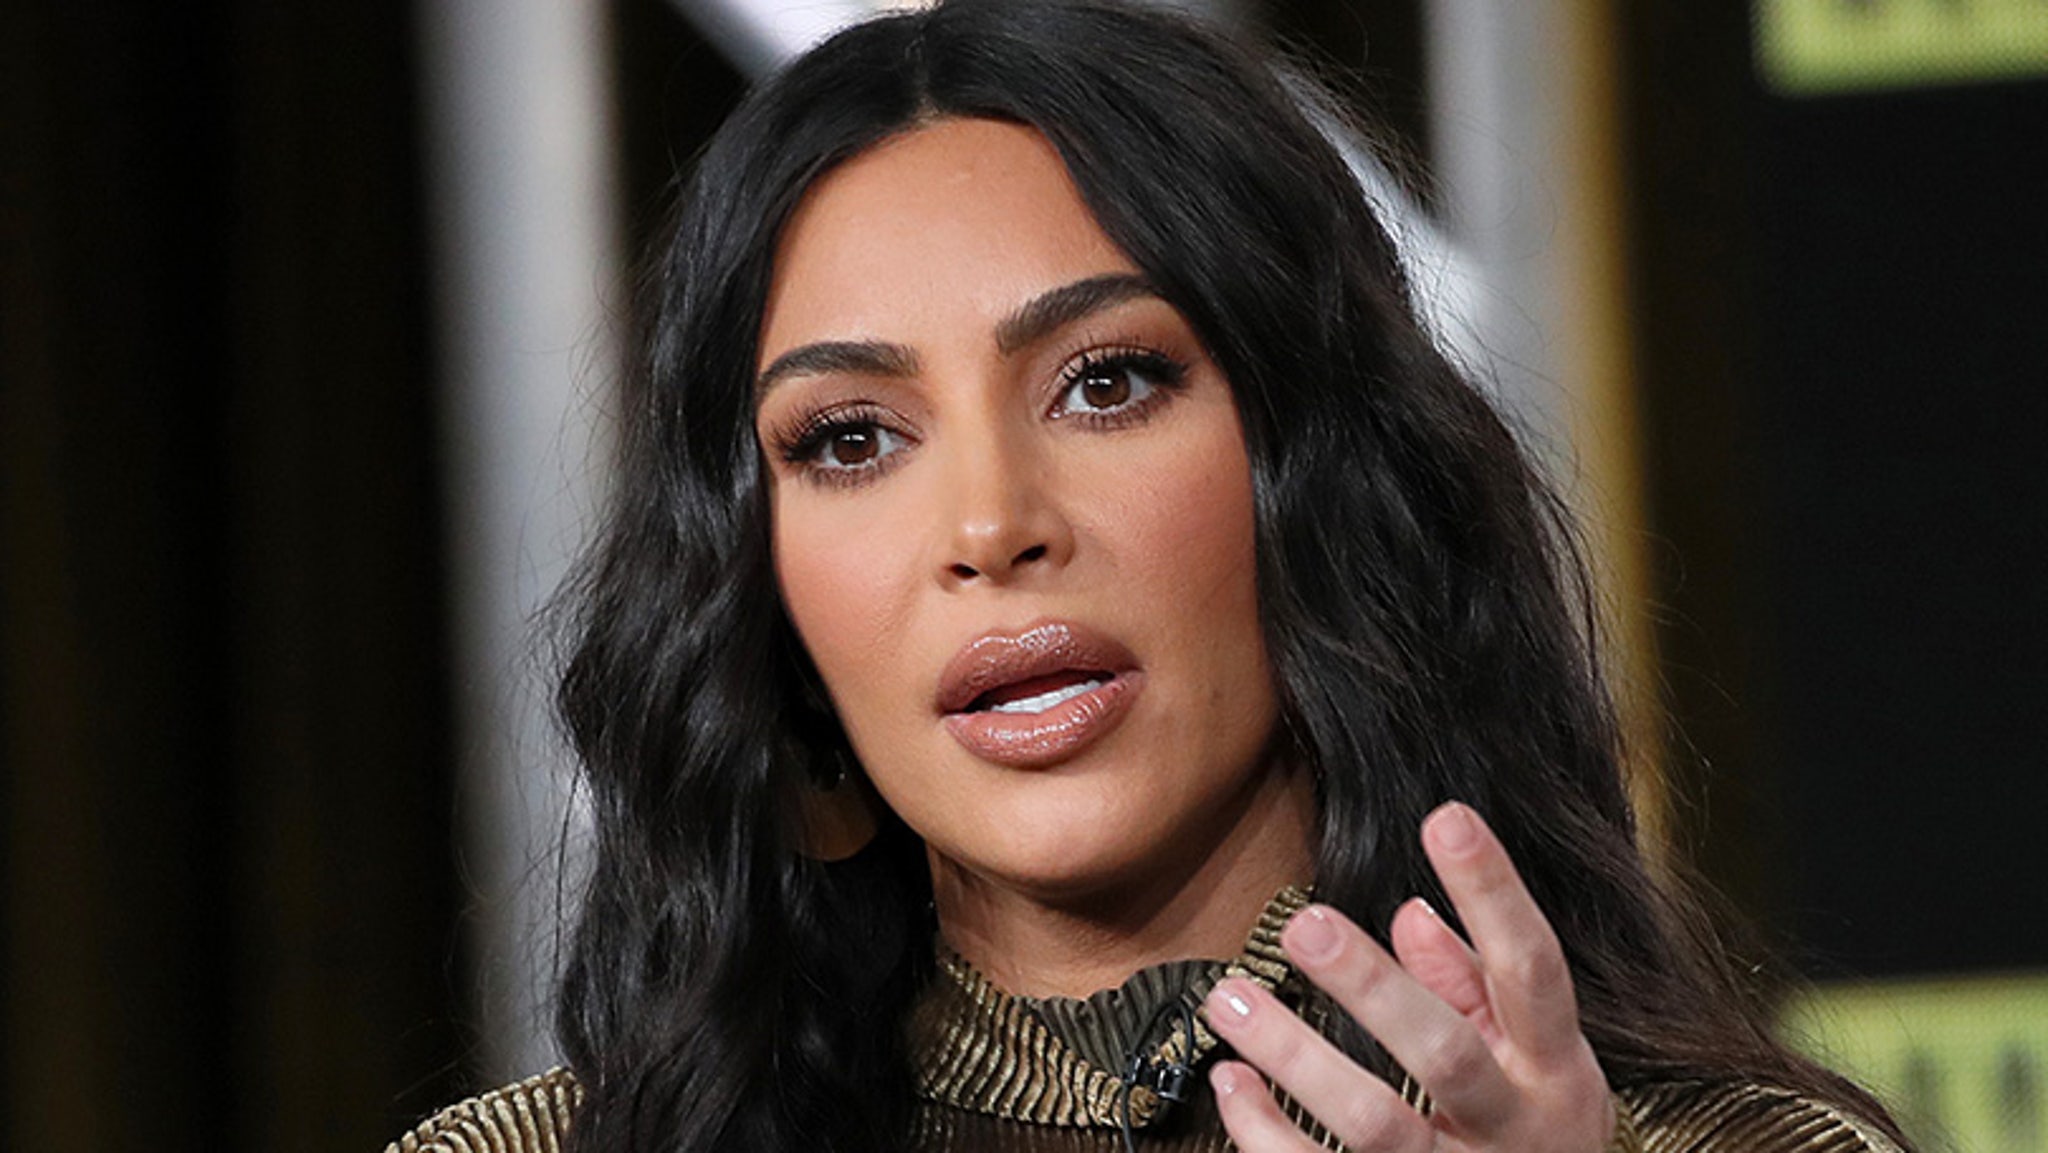 Un juré potentiel dit qu’il ne peut pas servir dans le procès de Kardashians parce qu’il « continuerait à rejouer » la sex tape à l’esprit